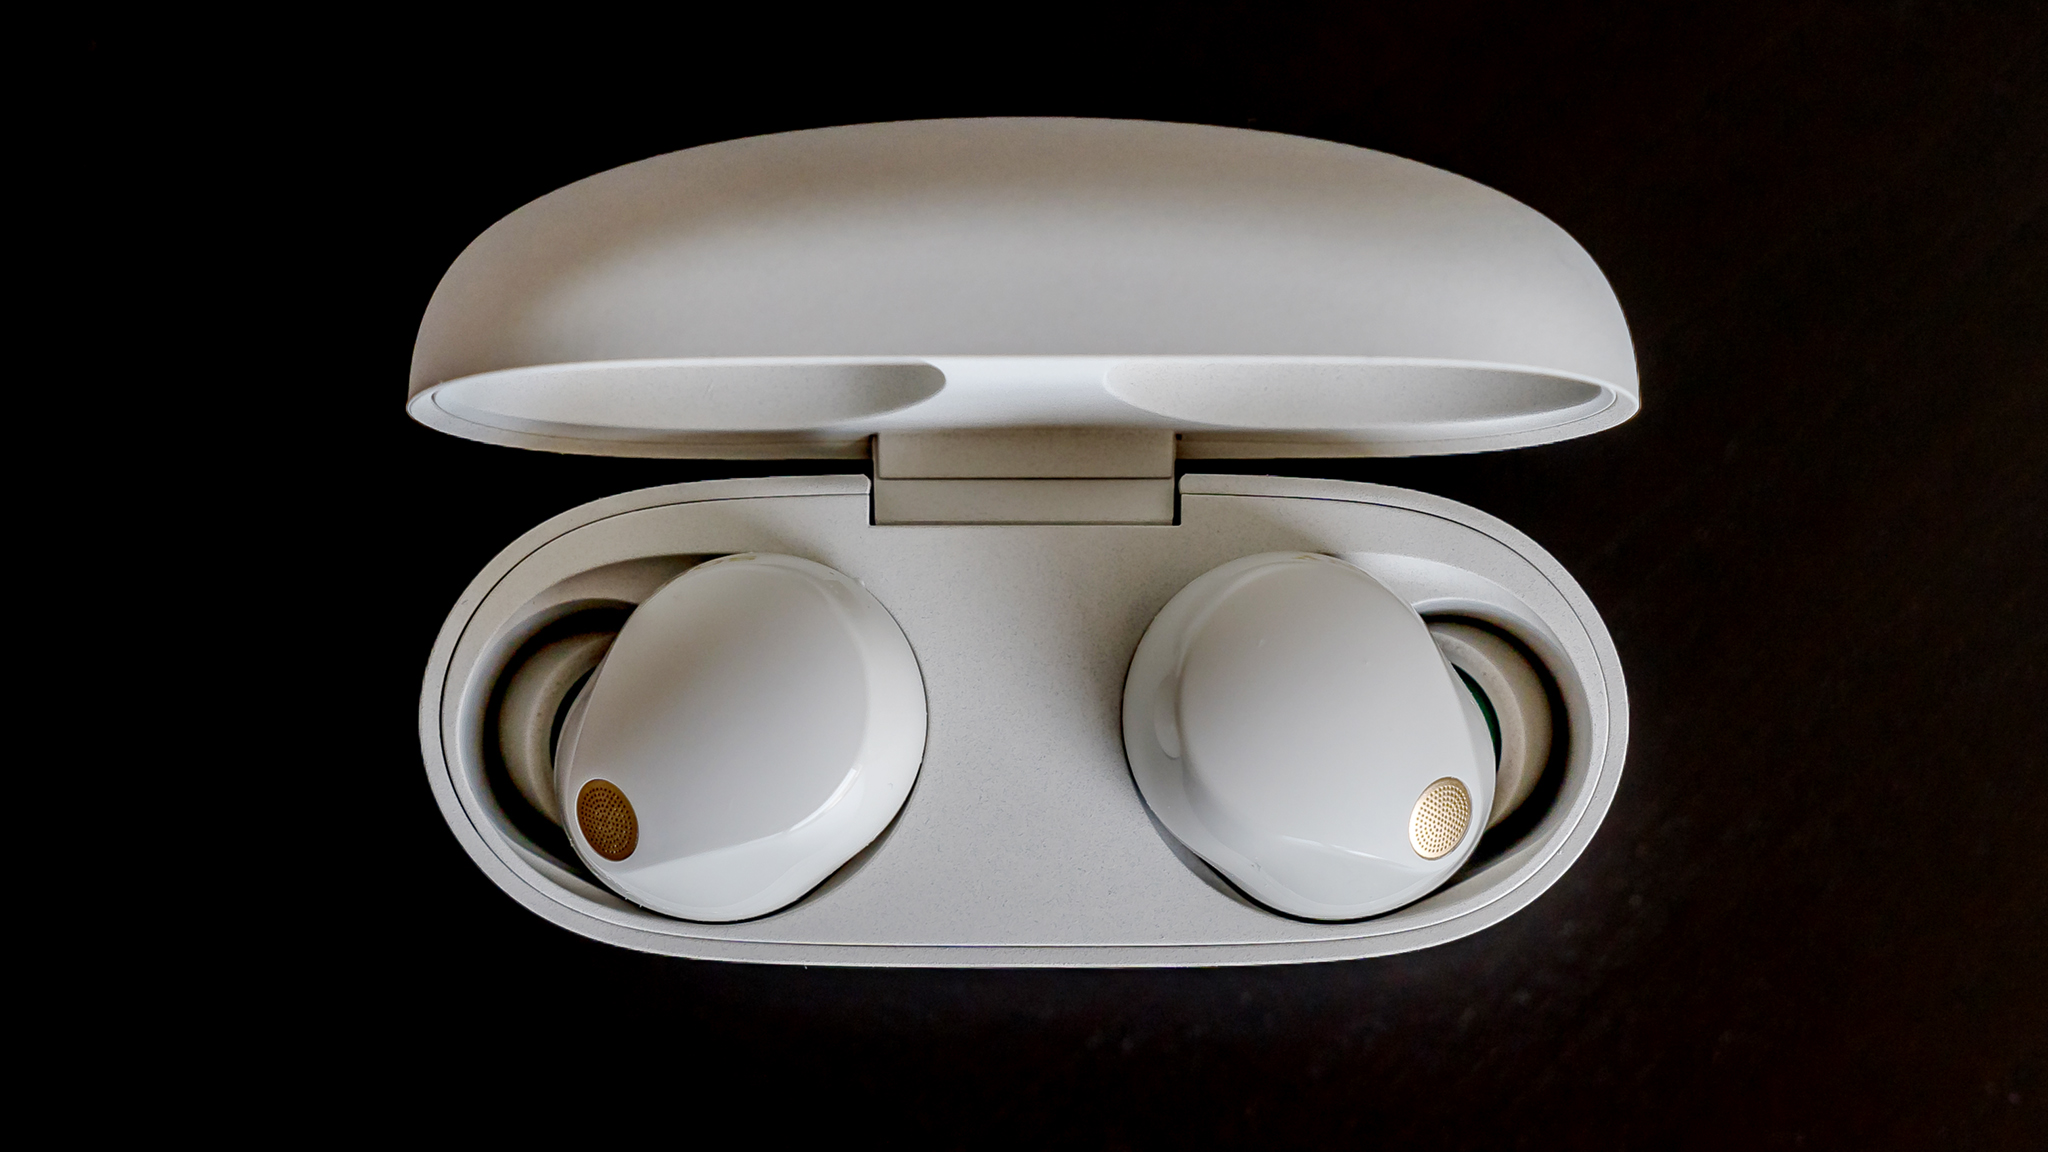 Sony WF-1000XM5 earbuds in case lid open.